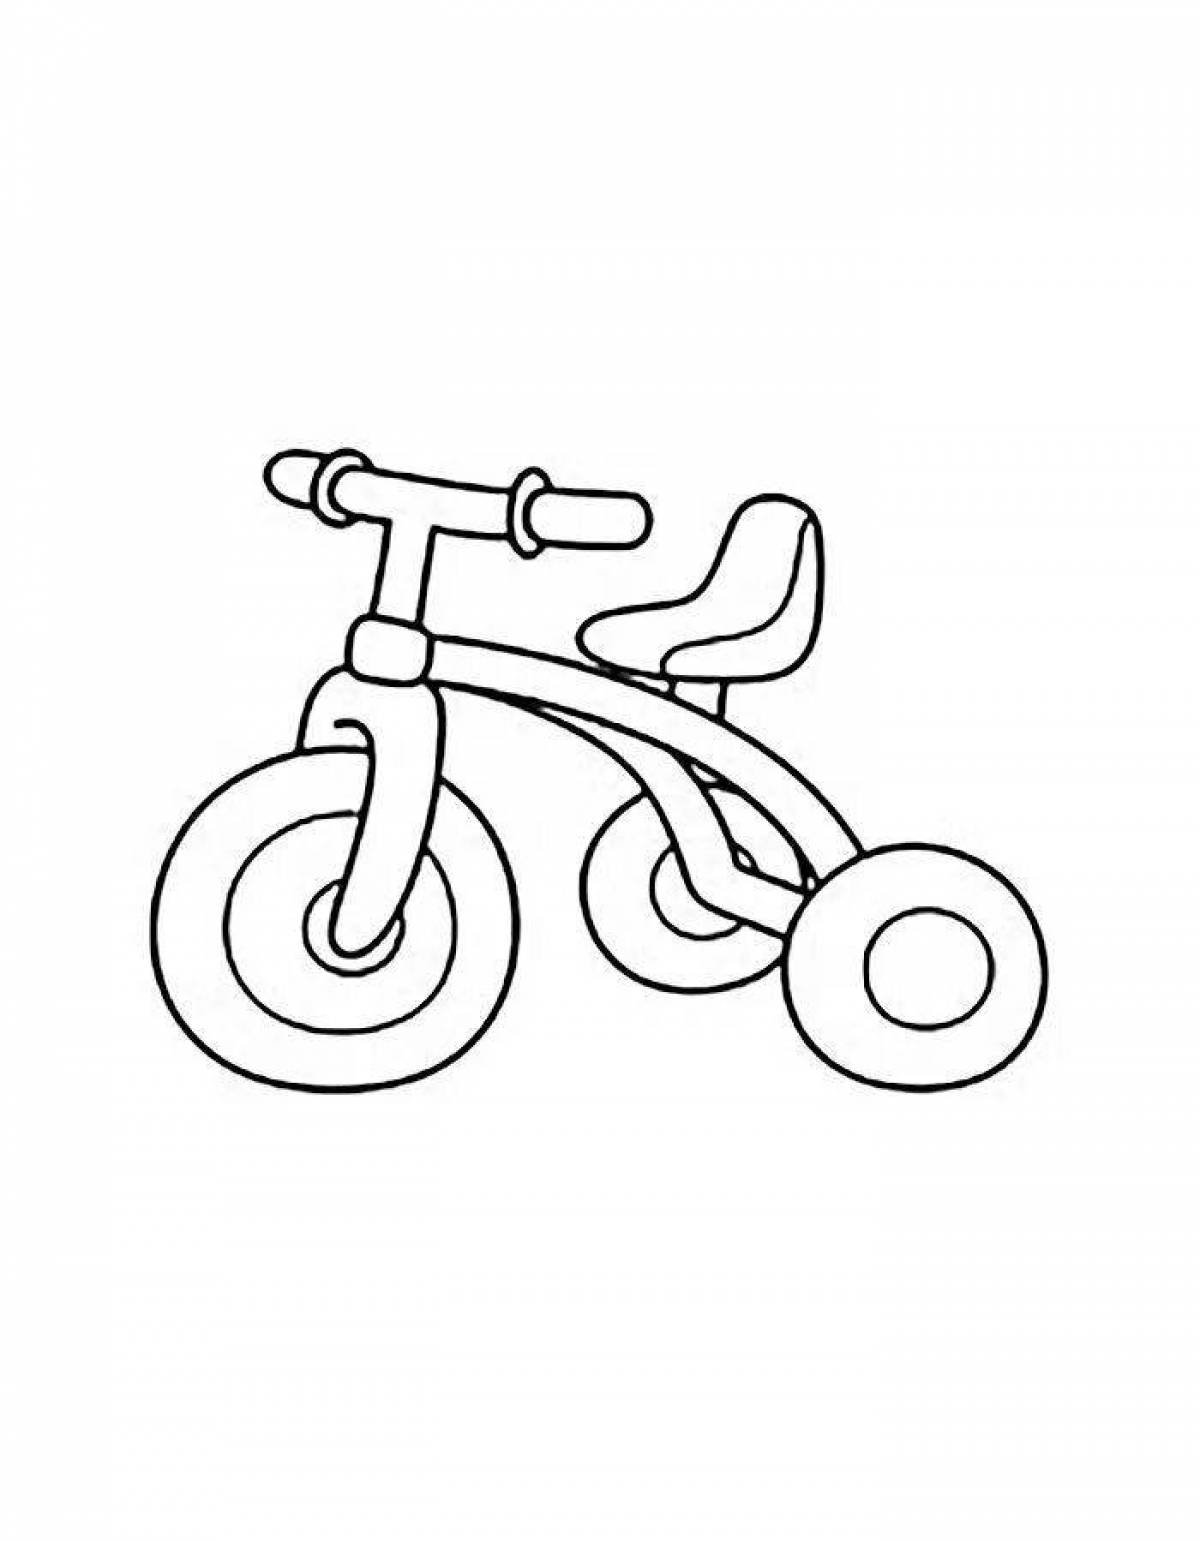 Веселая раскраска велосипеда для детей